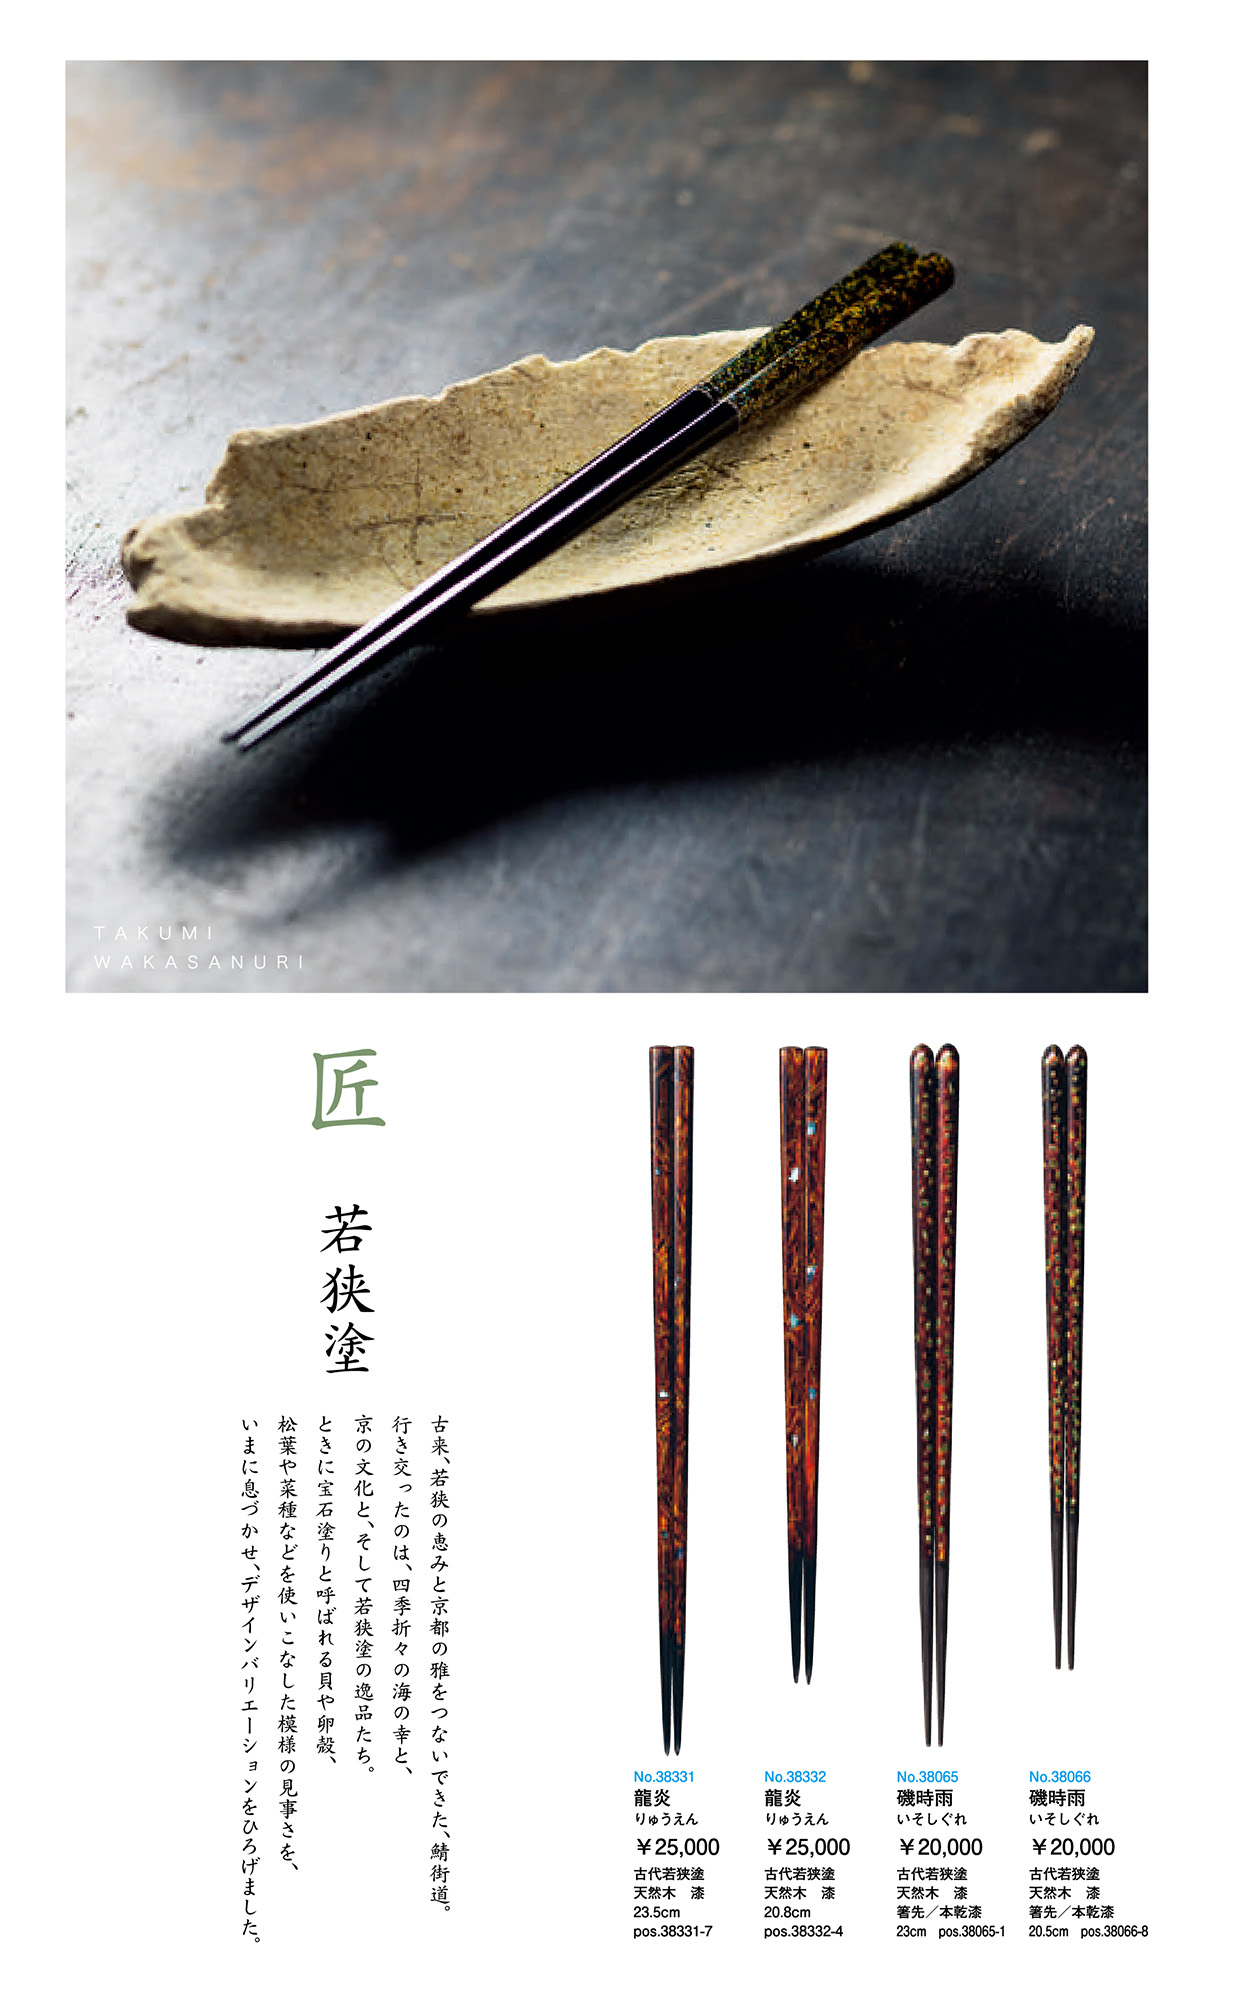 一双(ISSOU) 頂級日本職人系列筷子- 箸ISHIDA-木筷/漆筷/環保筷